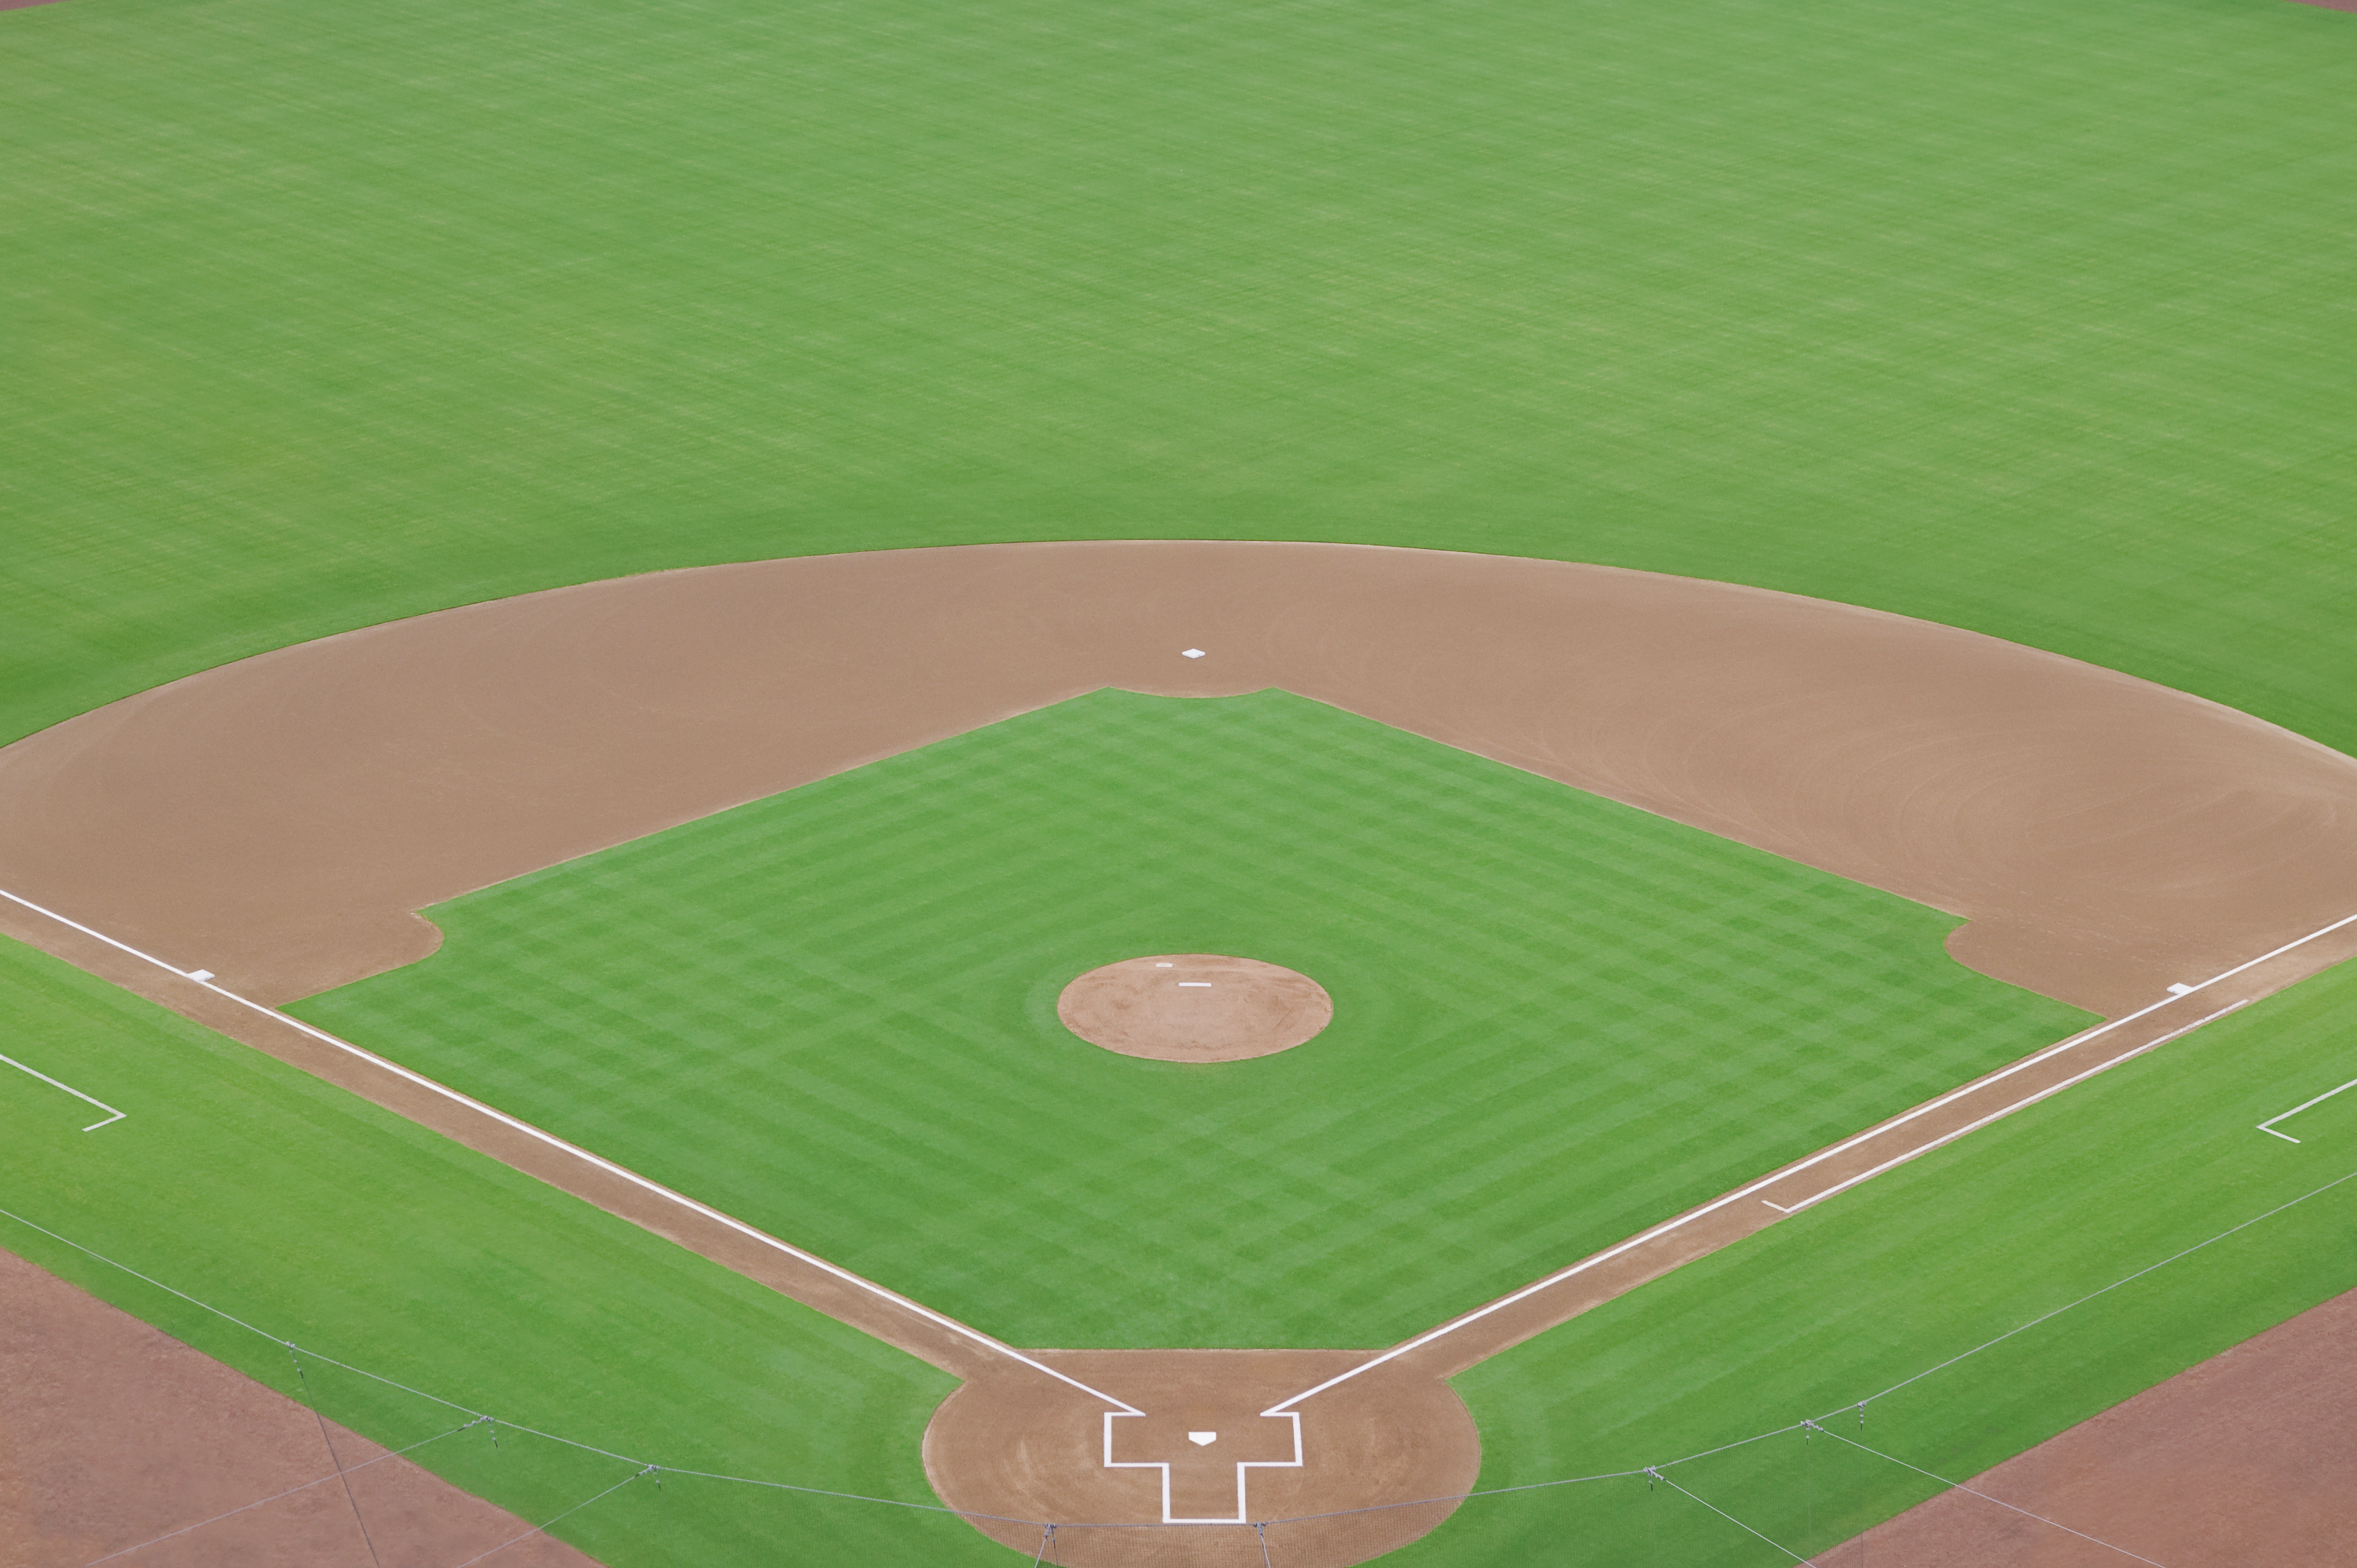 Empty baseball field